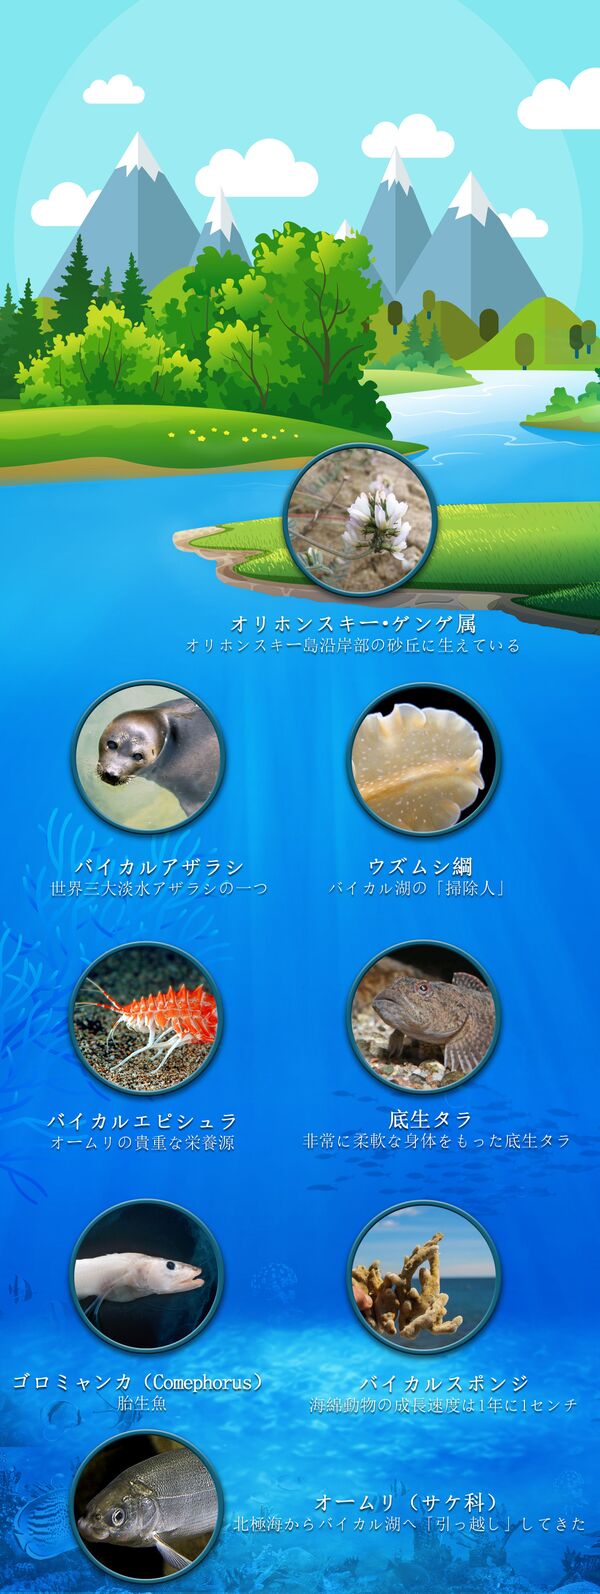 バイカル湖の主な固有種を見てみよう - Sputnik 日本